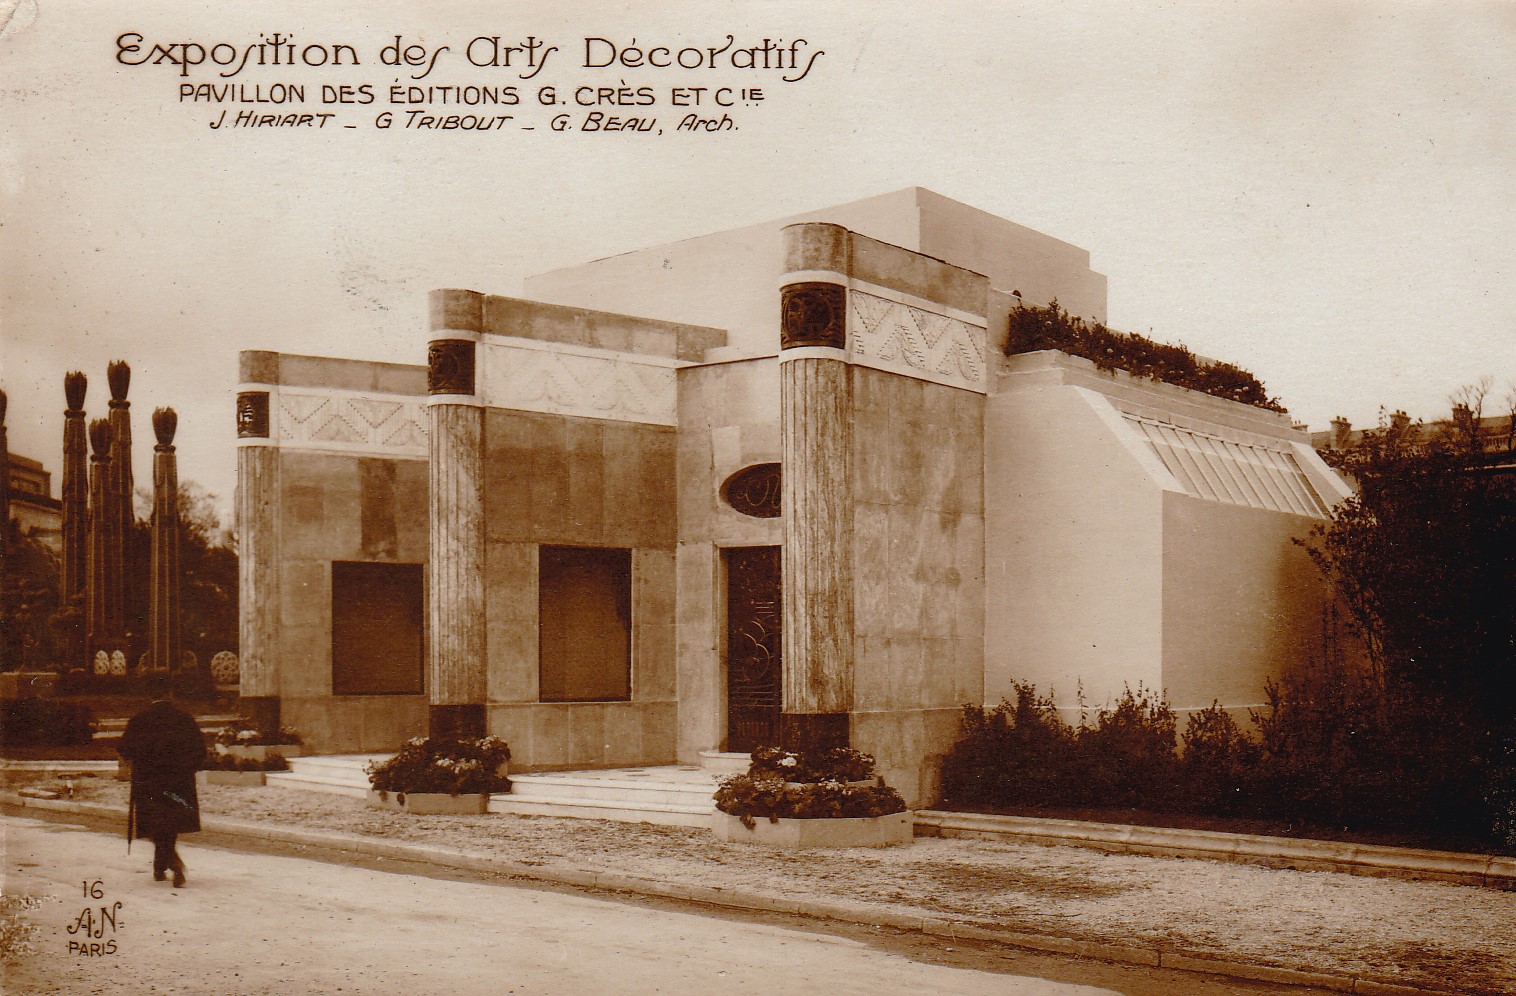 Extincteur Maison AKLH Paris N1 - Art-Deco-Design - Objets d'Art